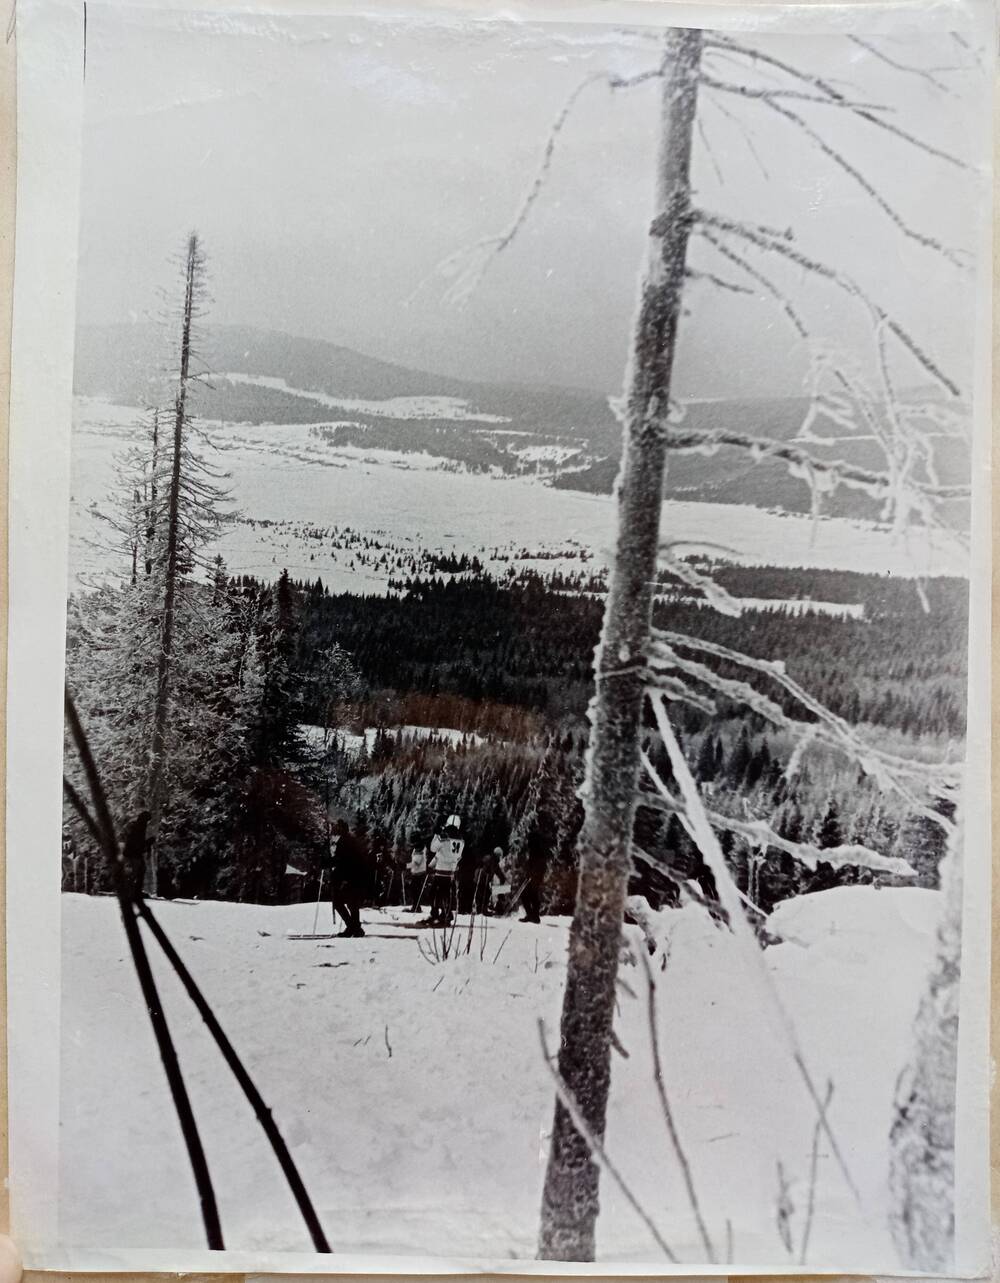 Фото из альбома по истории развития лыжного спорта в Н. Тагиле с 1926 года. Вид с горы Белой.